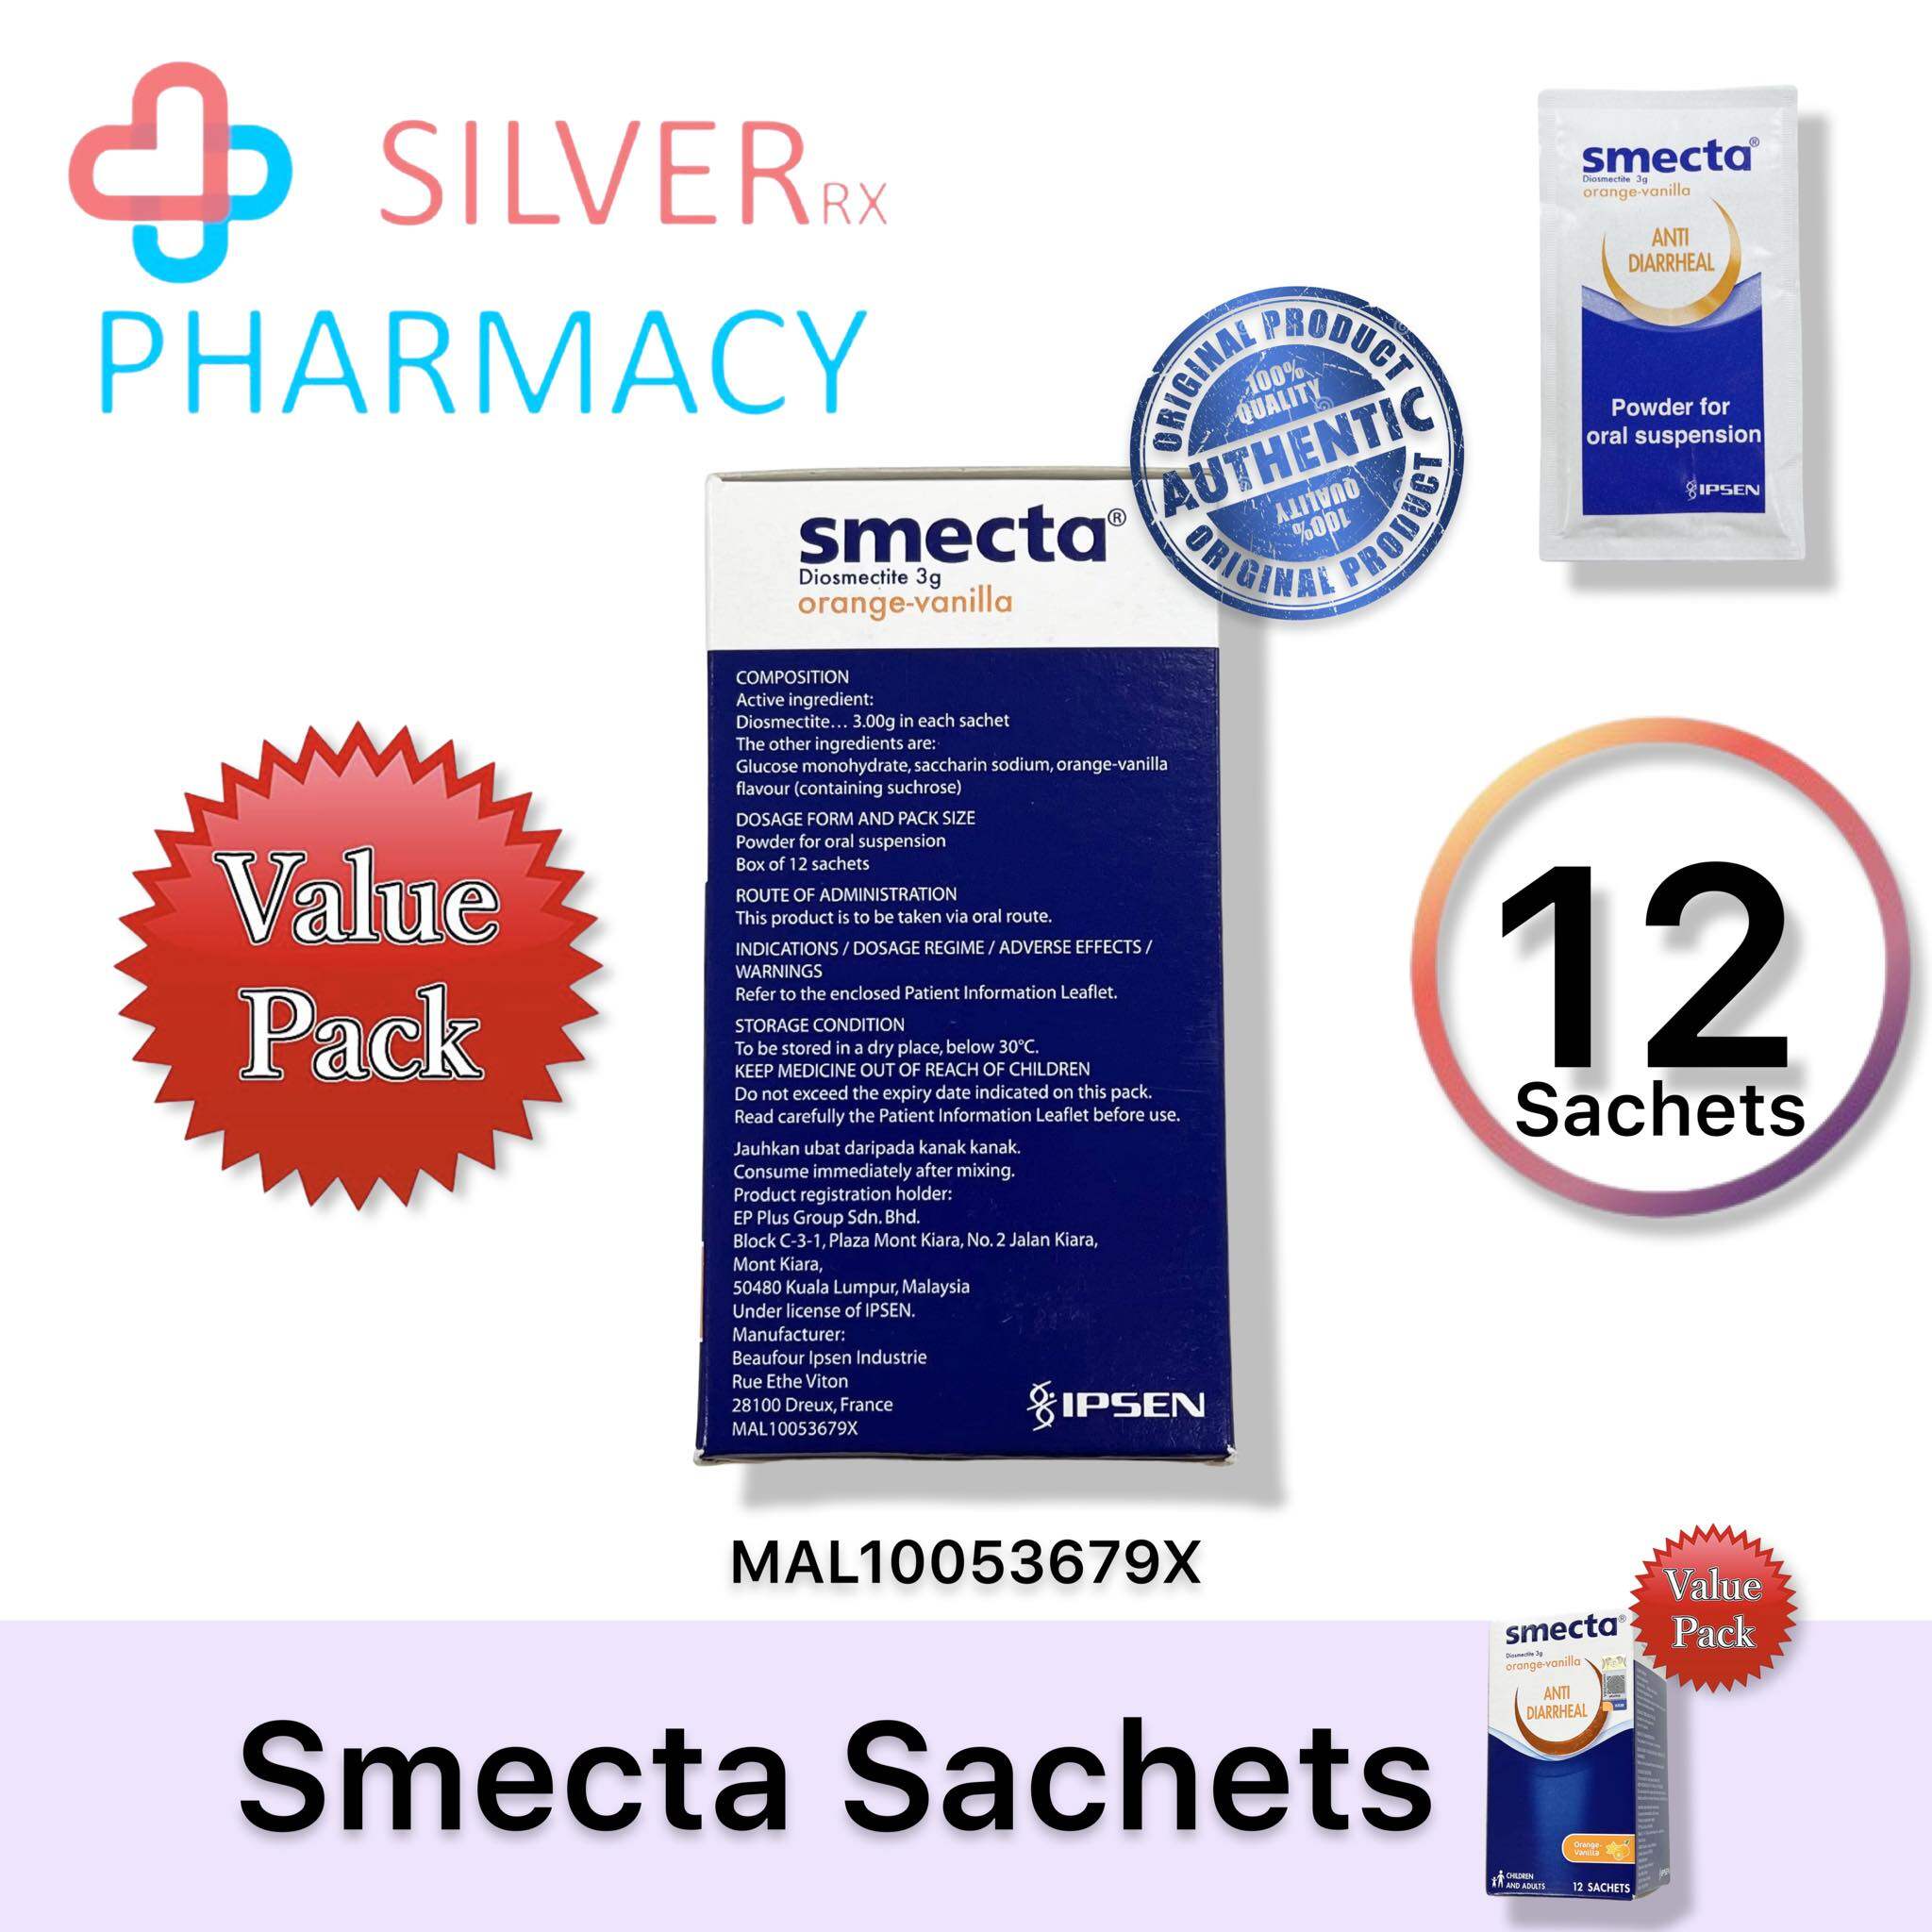 [Exp 09/2025] Smecta Anti-Diarrheal Powder Diosmectite Orange-Vanilla 3g sachet [1's/ 12's]